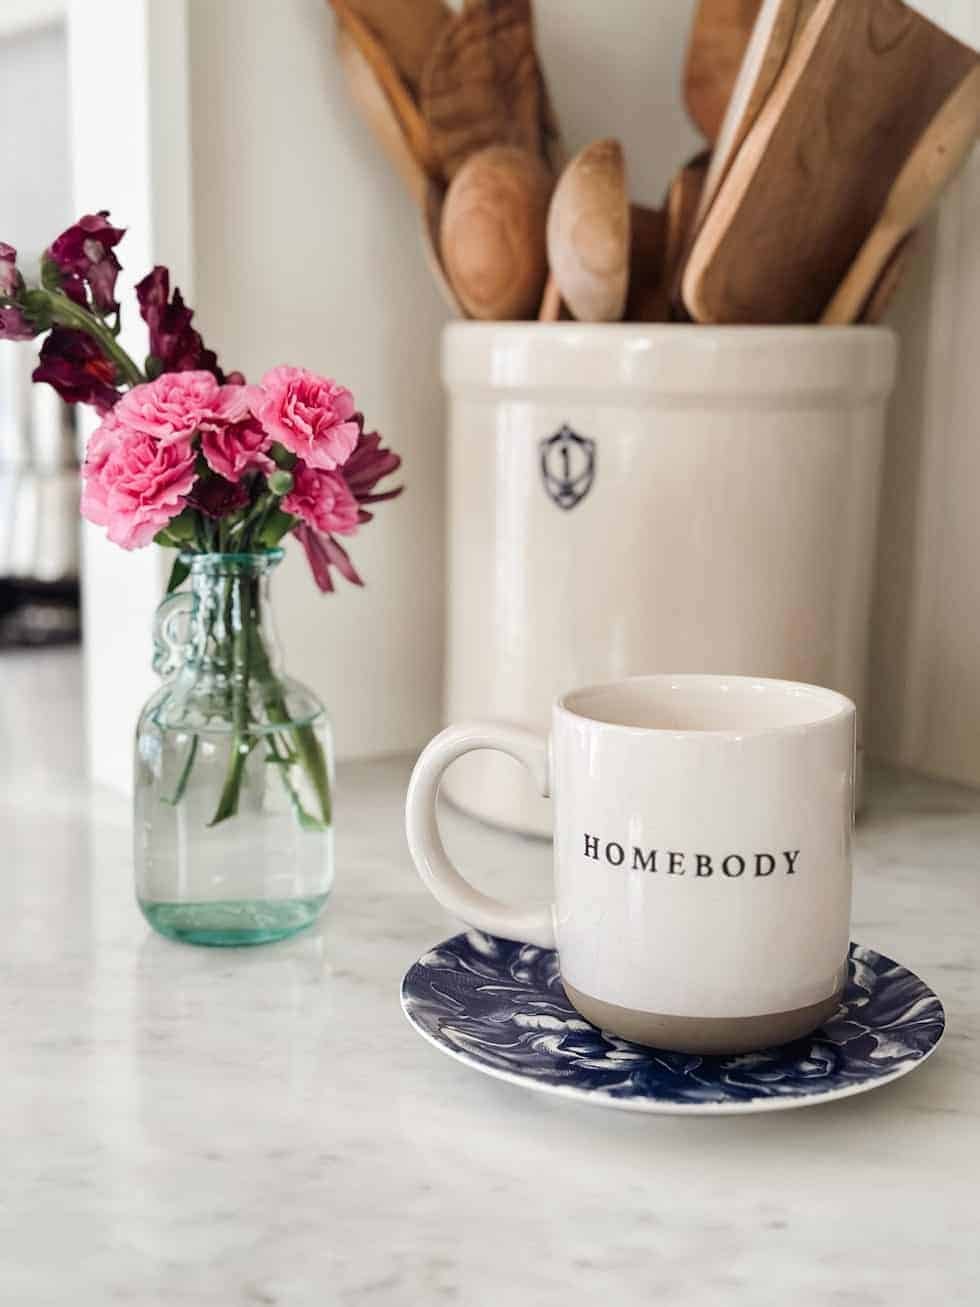 homebody-mug-the-inspired-room